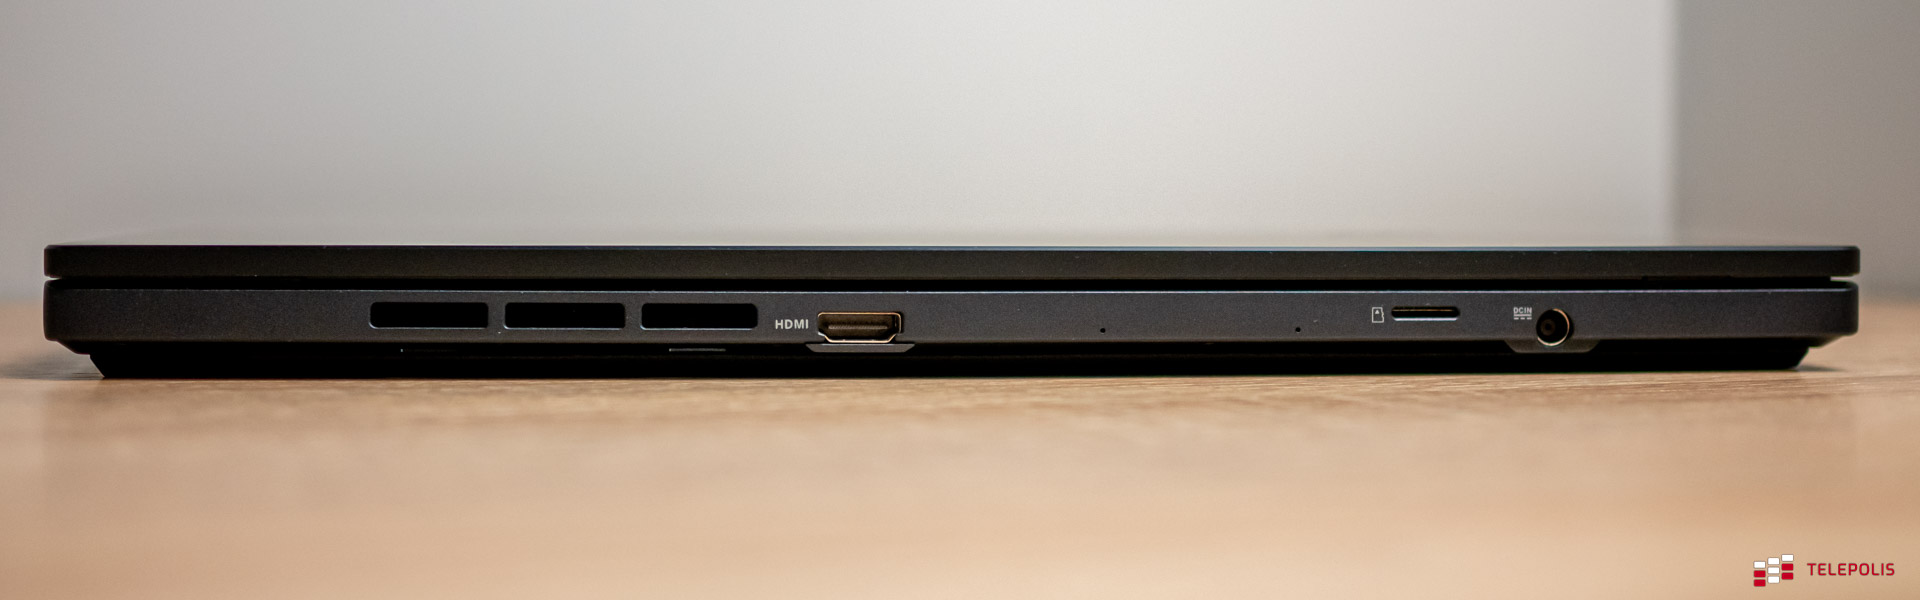 ASUS Zenbook Pro 14 Duo OLED, czyli zakochałem się w laptopie (test)